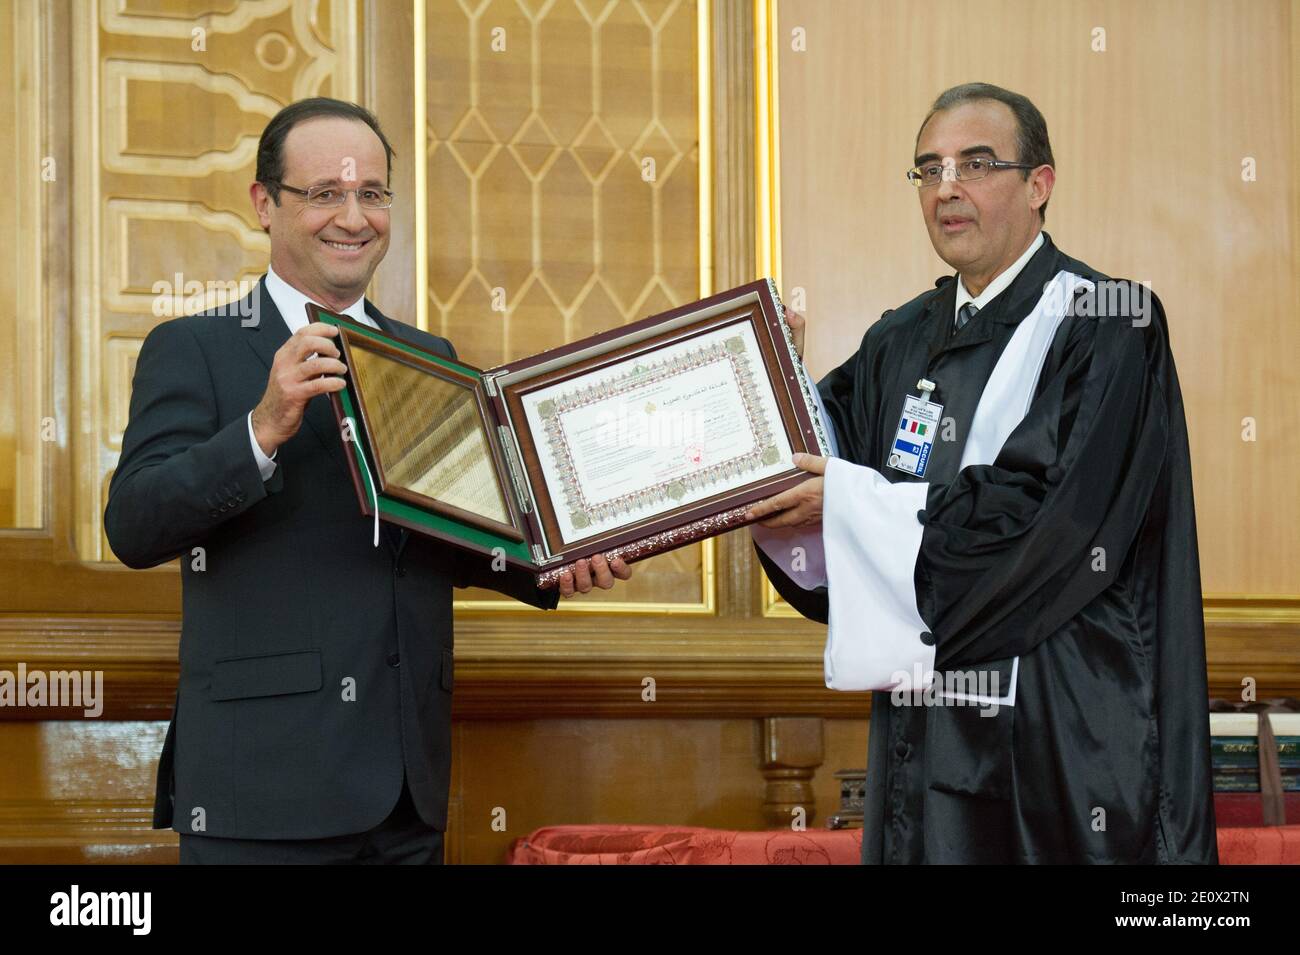 Le président français François Hollande est fait Docteur Honoris Causa de l'Université de Tlemcen le deuxième jour de sa visite d'Etat de deux jours en Algérie, à Alger le 20 décembre 2012. Photo de Christophe Guibbbaud/ABACAPRESS.COM Banque D'Images